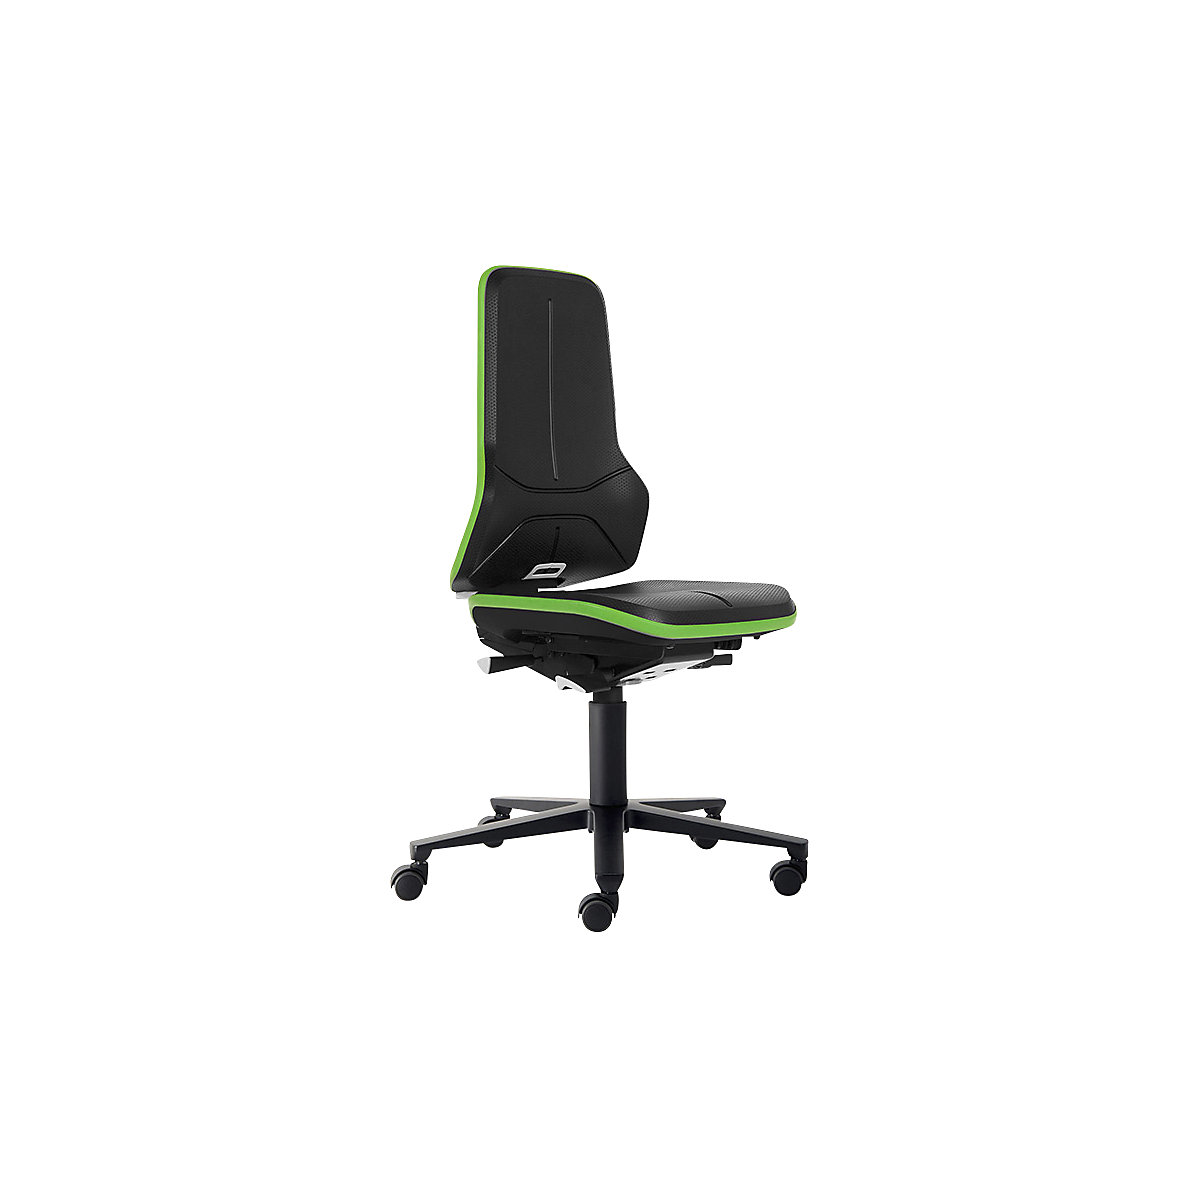 bimos – Siège d'atelier NEON, assise en mousse intégrale, antistatique, bande flexible verte